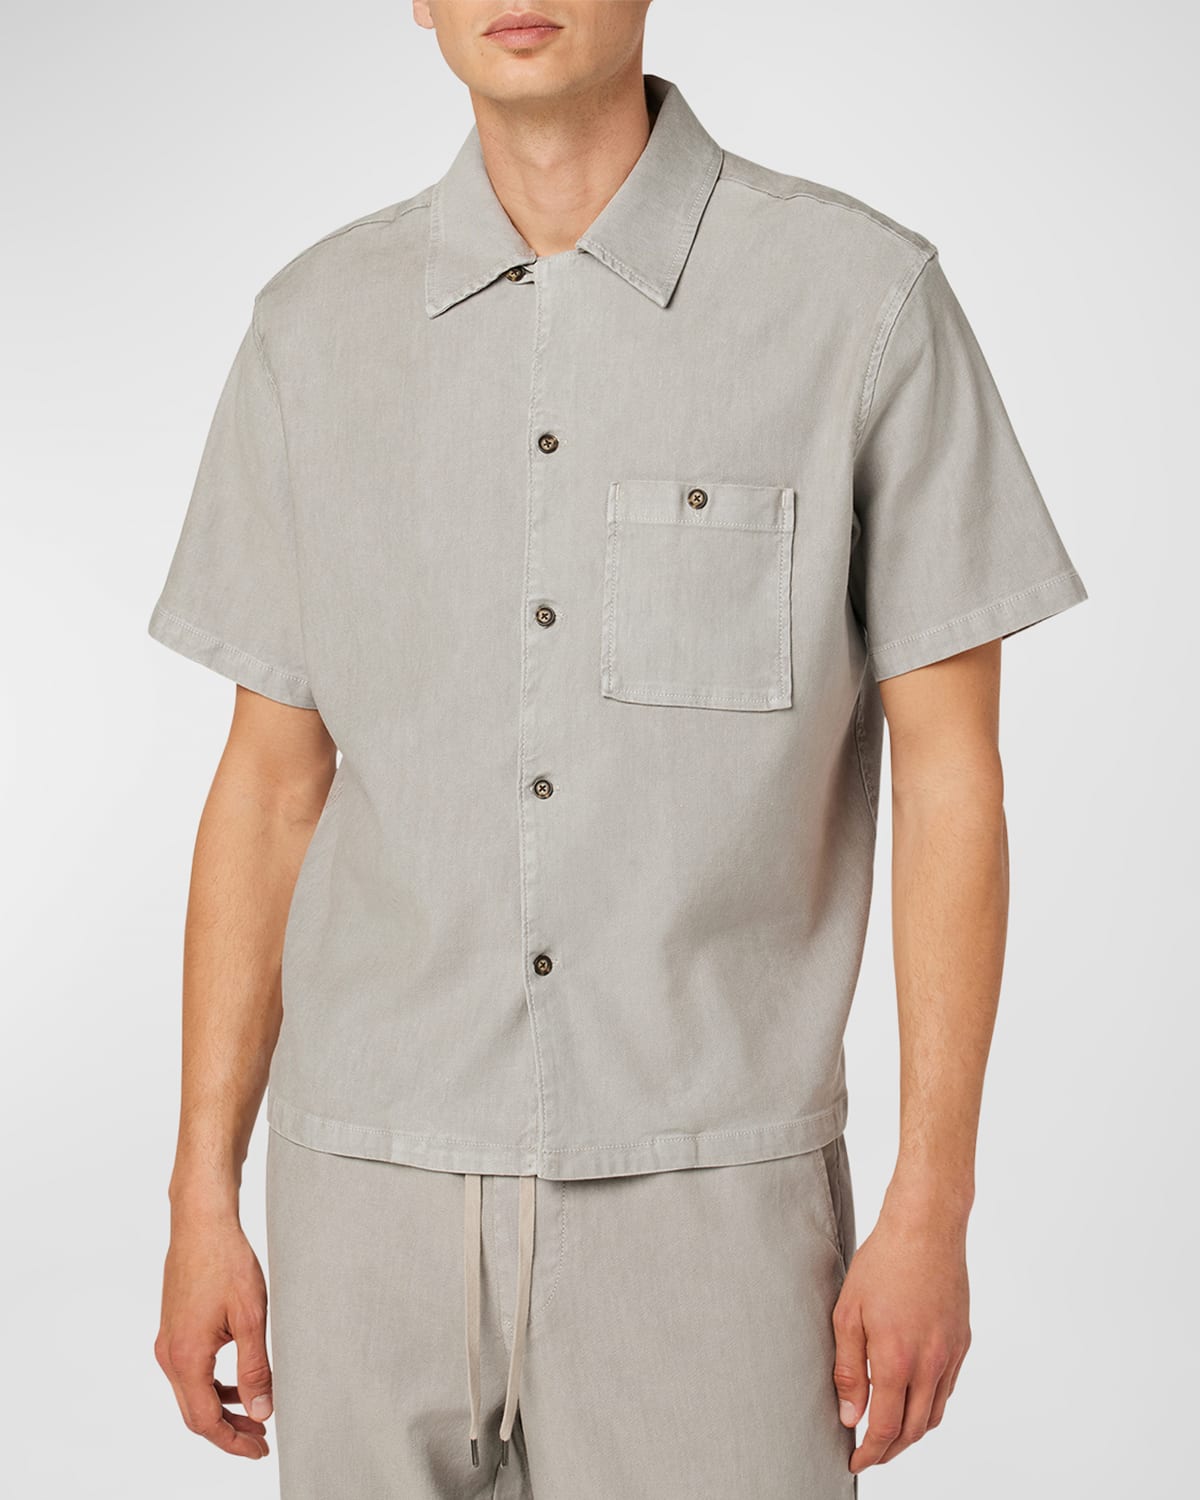 Men's Solid Linen-Lyocell Sport Shirt